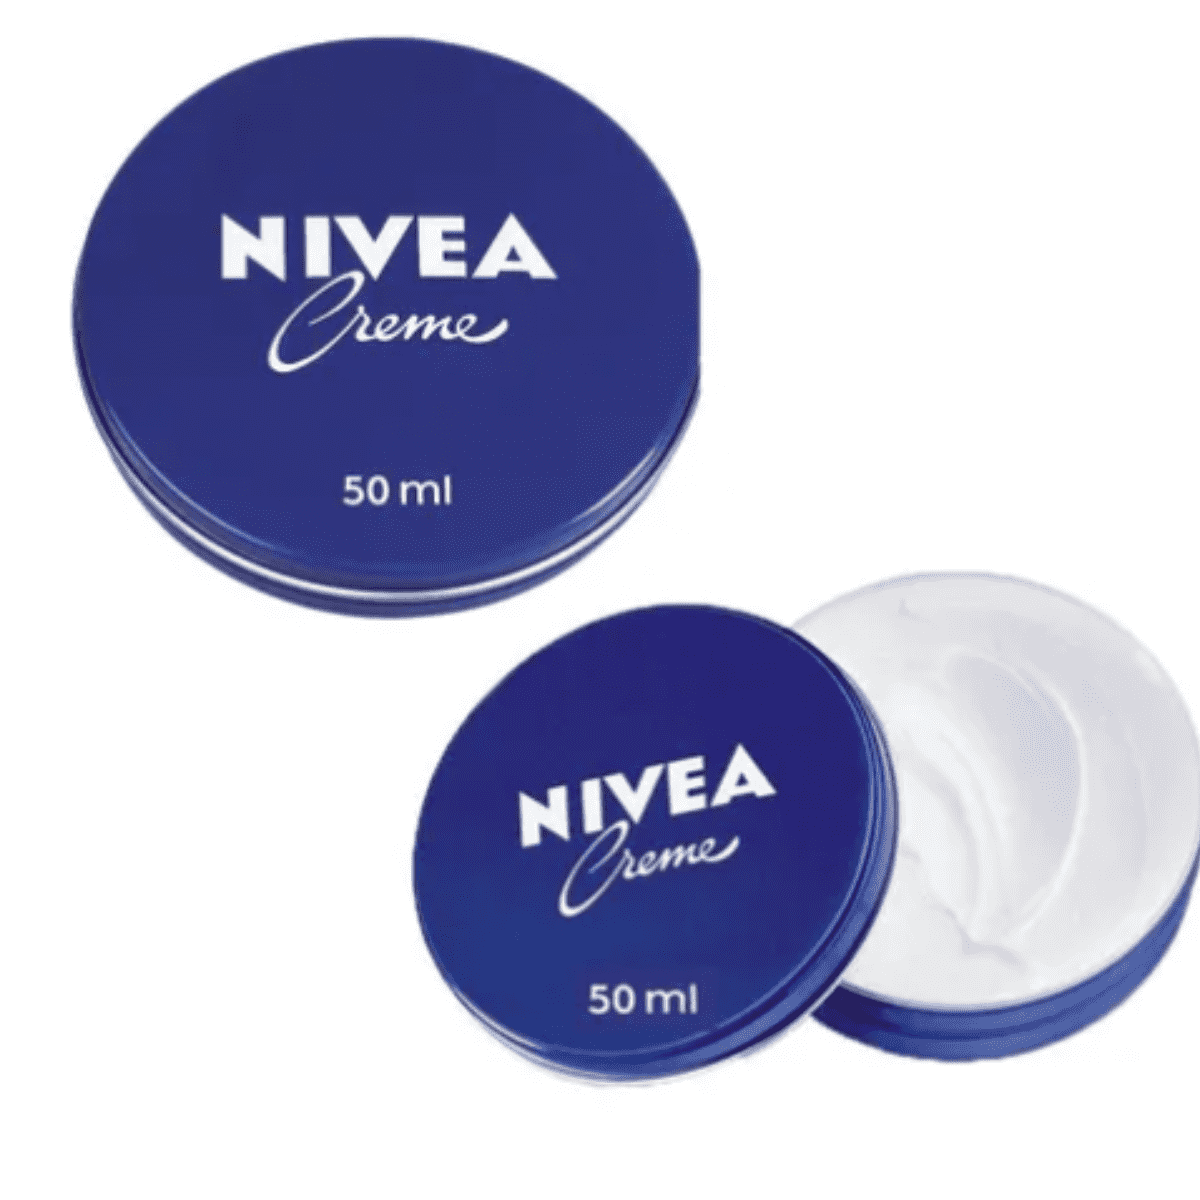 Crema Nivea: ¿Qué pasa te aplicas este producto en la cara? | Sano | Noticias e para estilo de vida saludable.